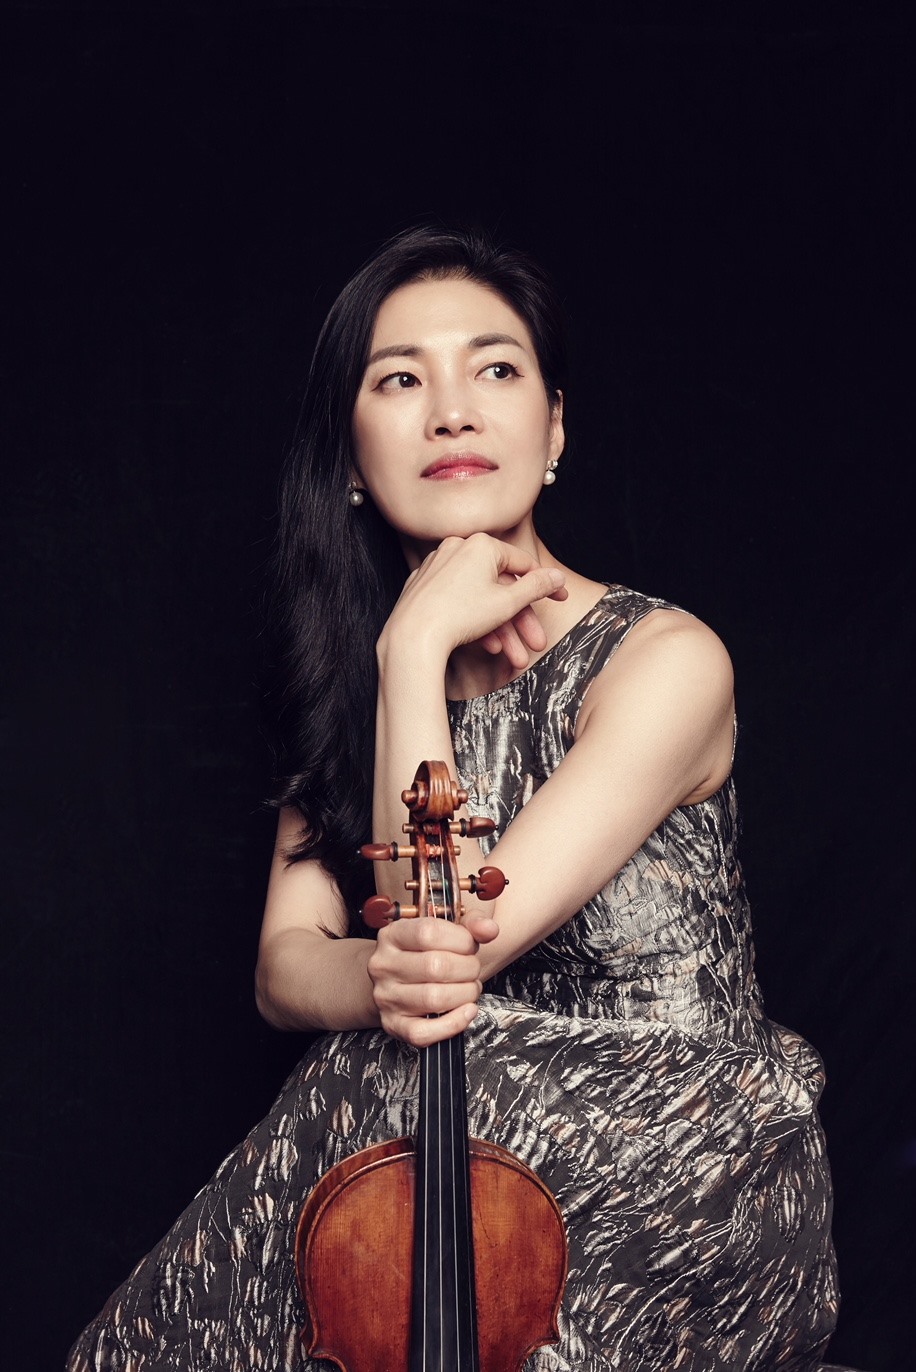 Nghệ sĩ violon - Kyung Sun Lee sẽ giới thiệu với khán giả Thủ đô cây đàn Joseph Guarneris được làm từ năm 1723. Ảnh: BTC.